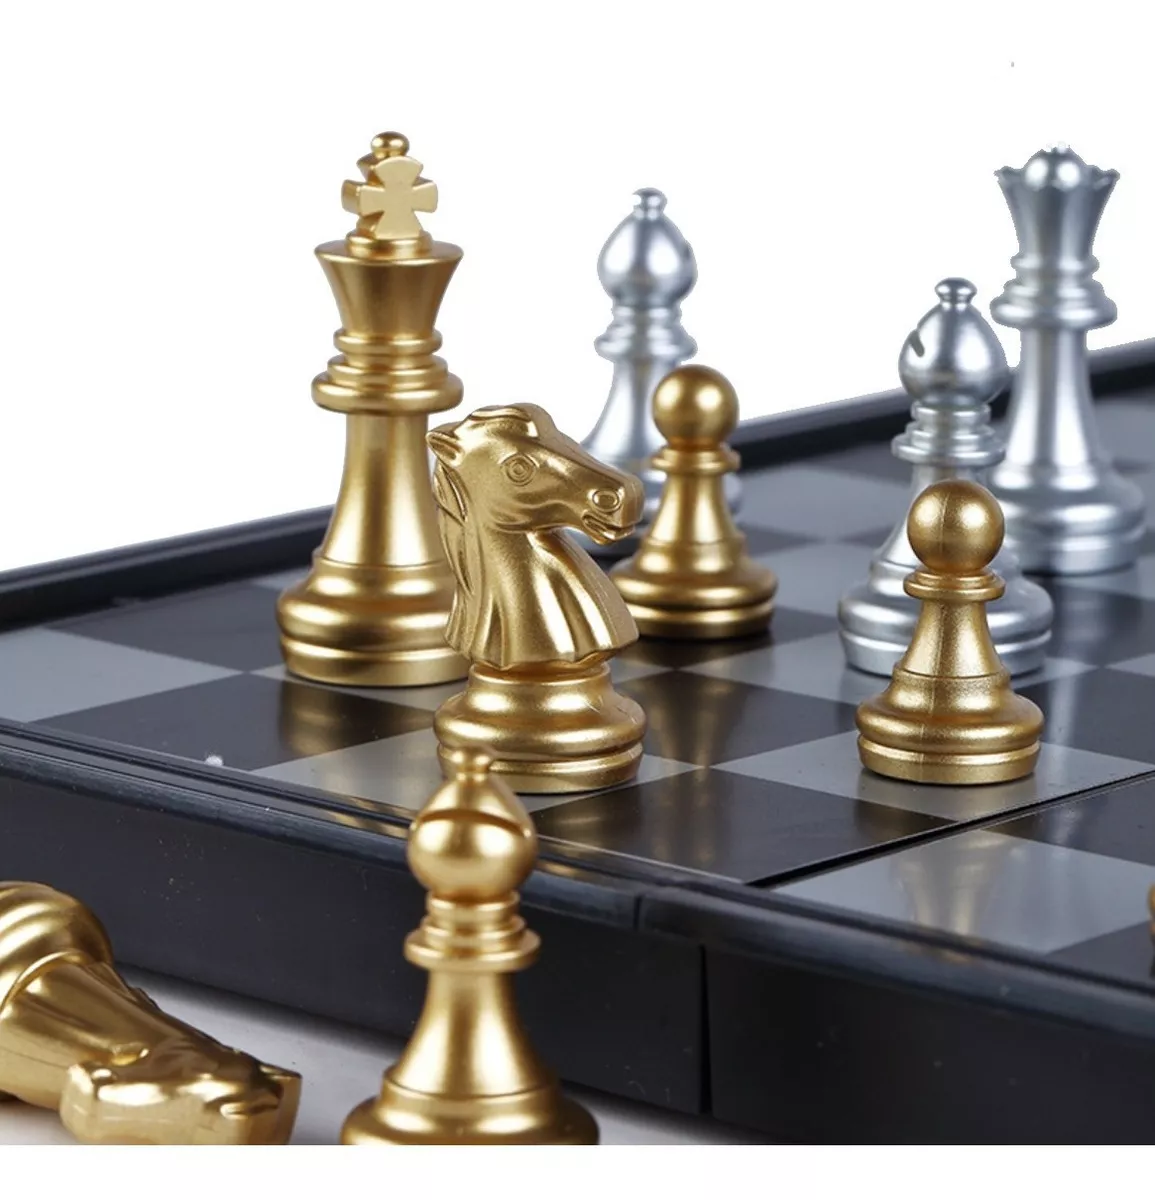 Primera imagen para búsqueda de ajedrez metalico